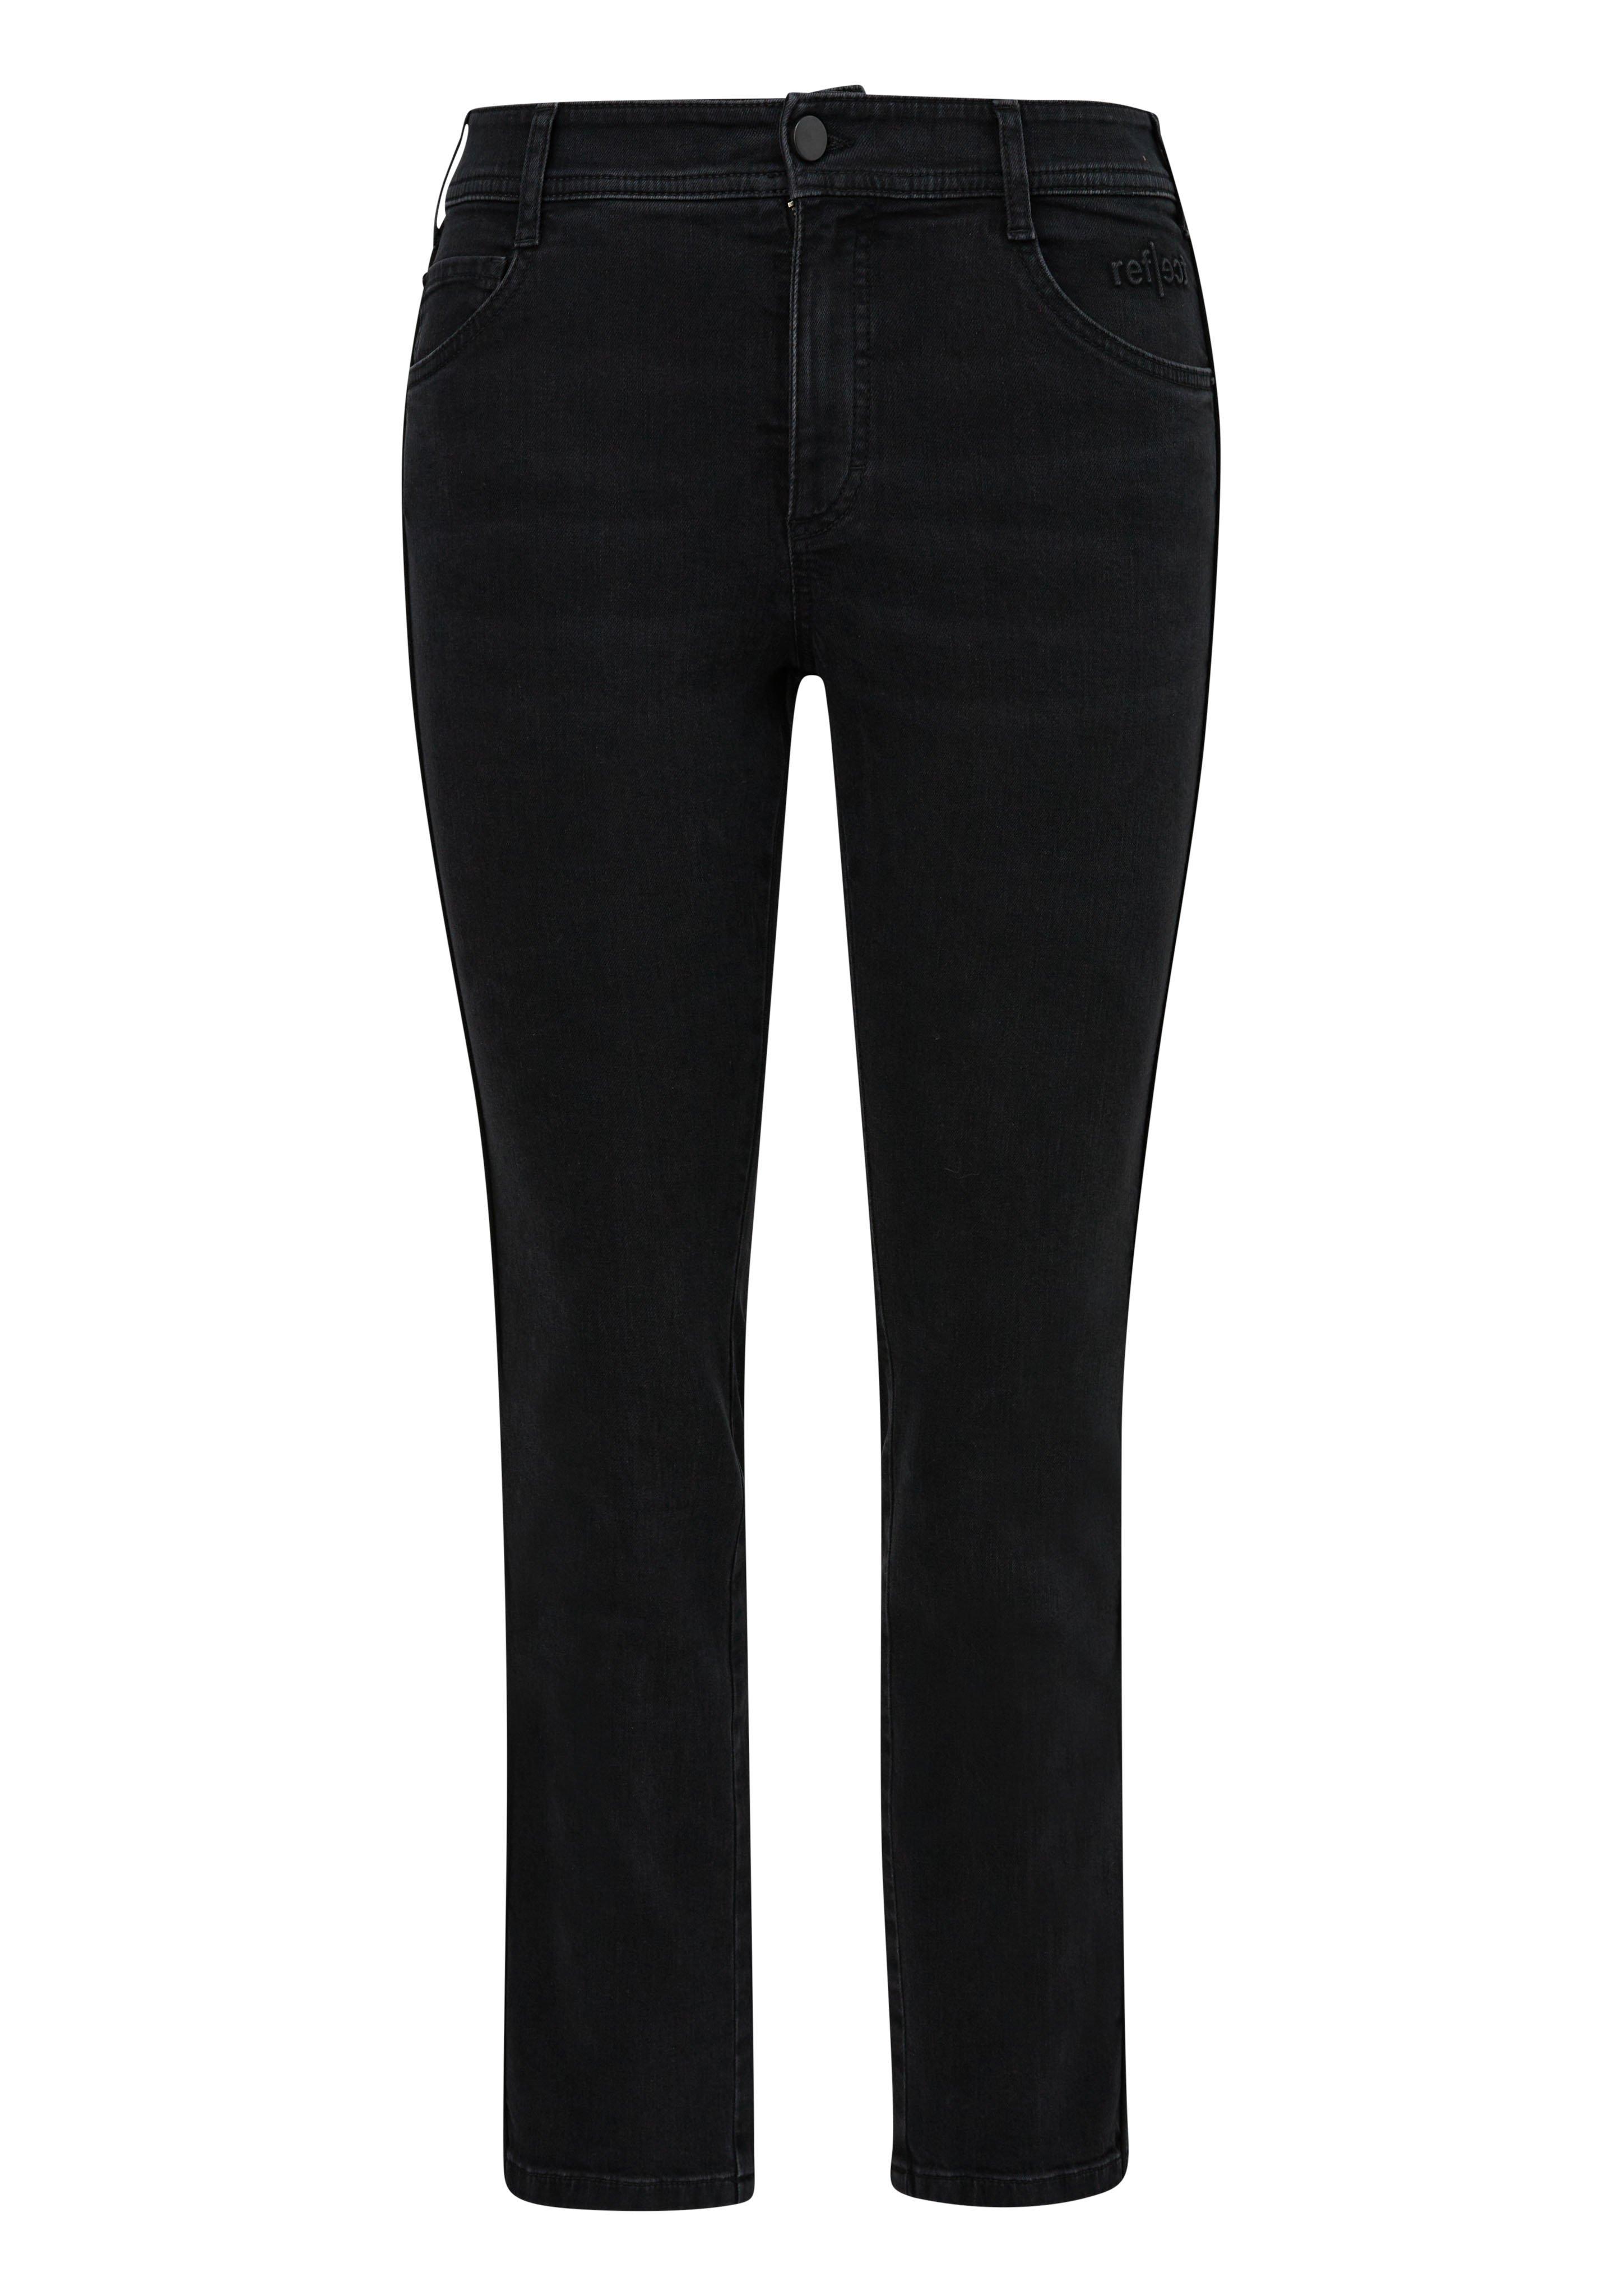 Große Größen: Schmale Jeans mit kontrastfarbener Seitennaht, black Denim, Gr.44-54 product